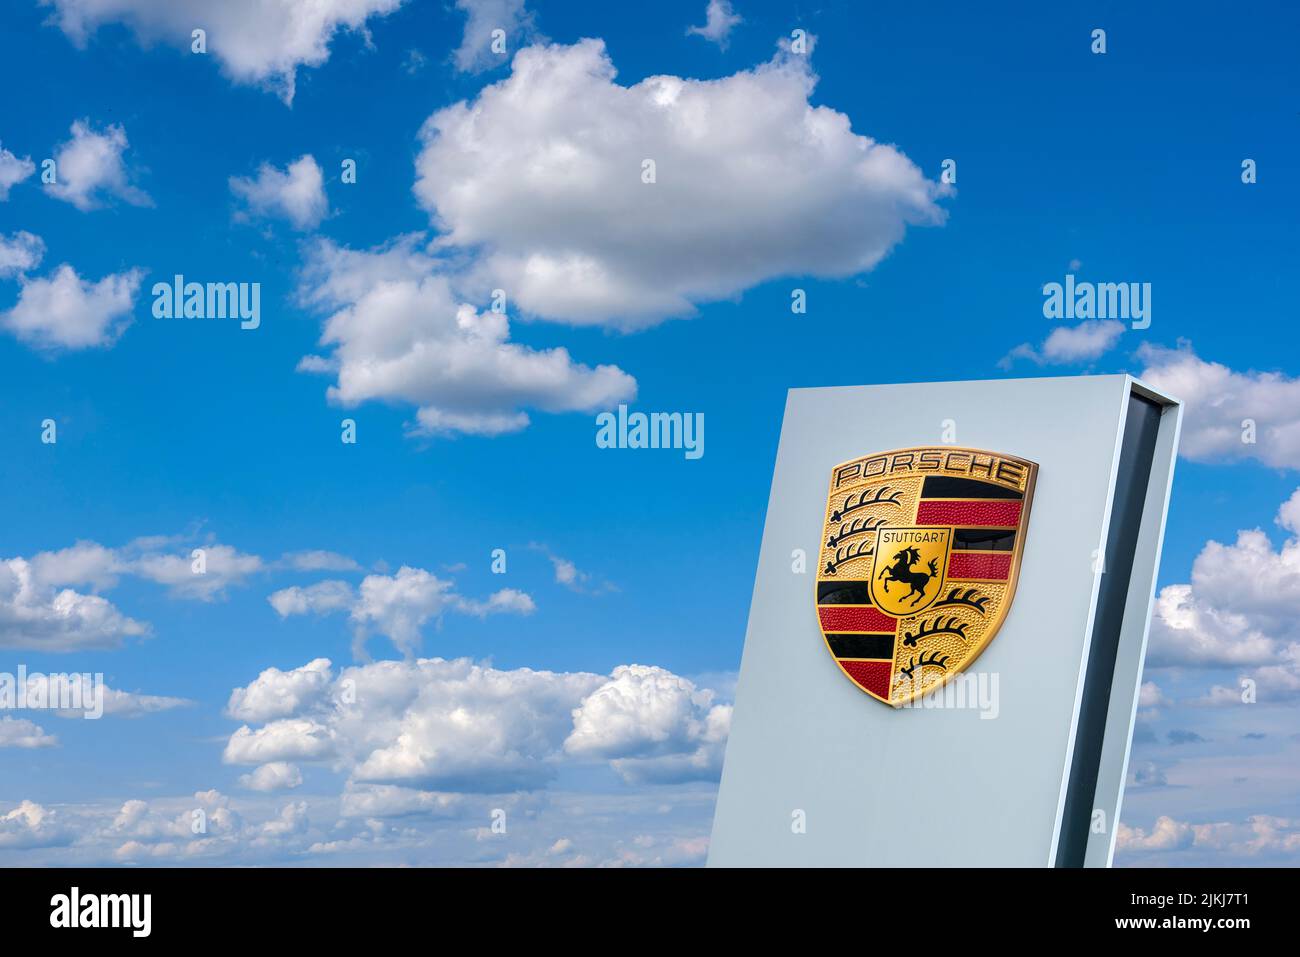 Porsche company advertising sign Stock Photo